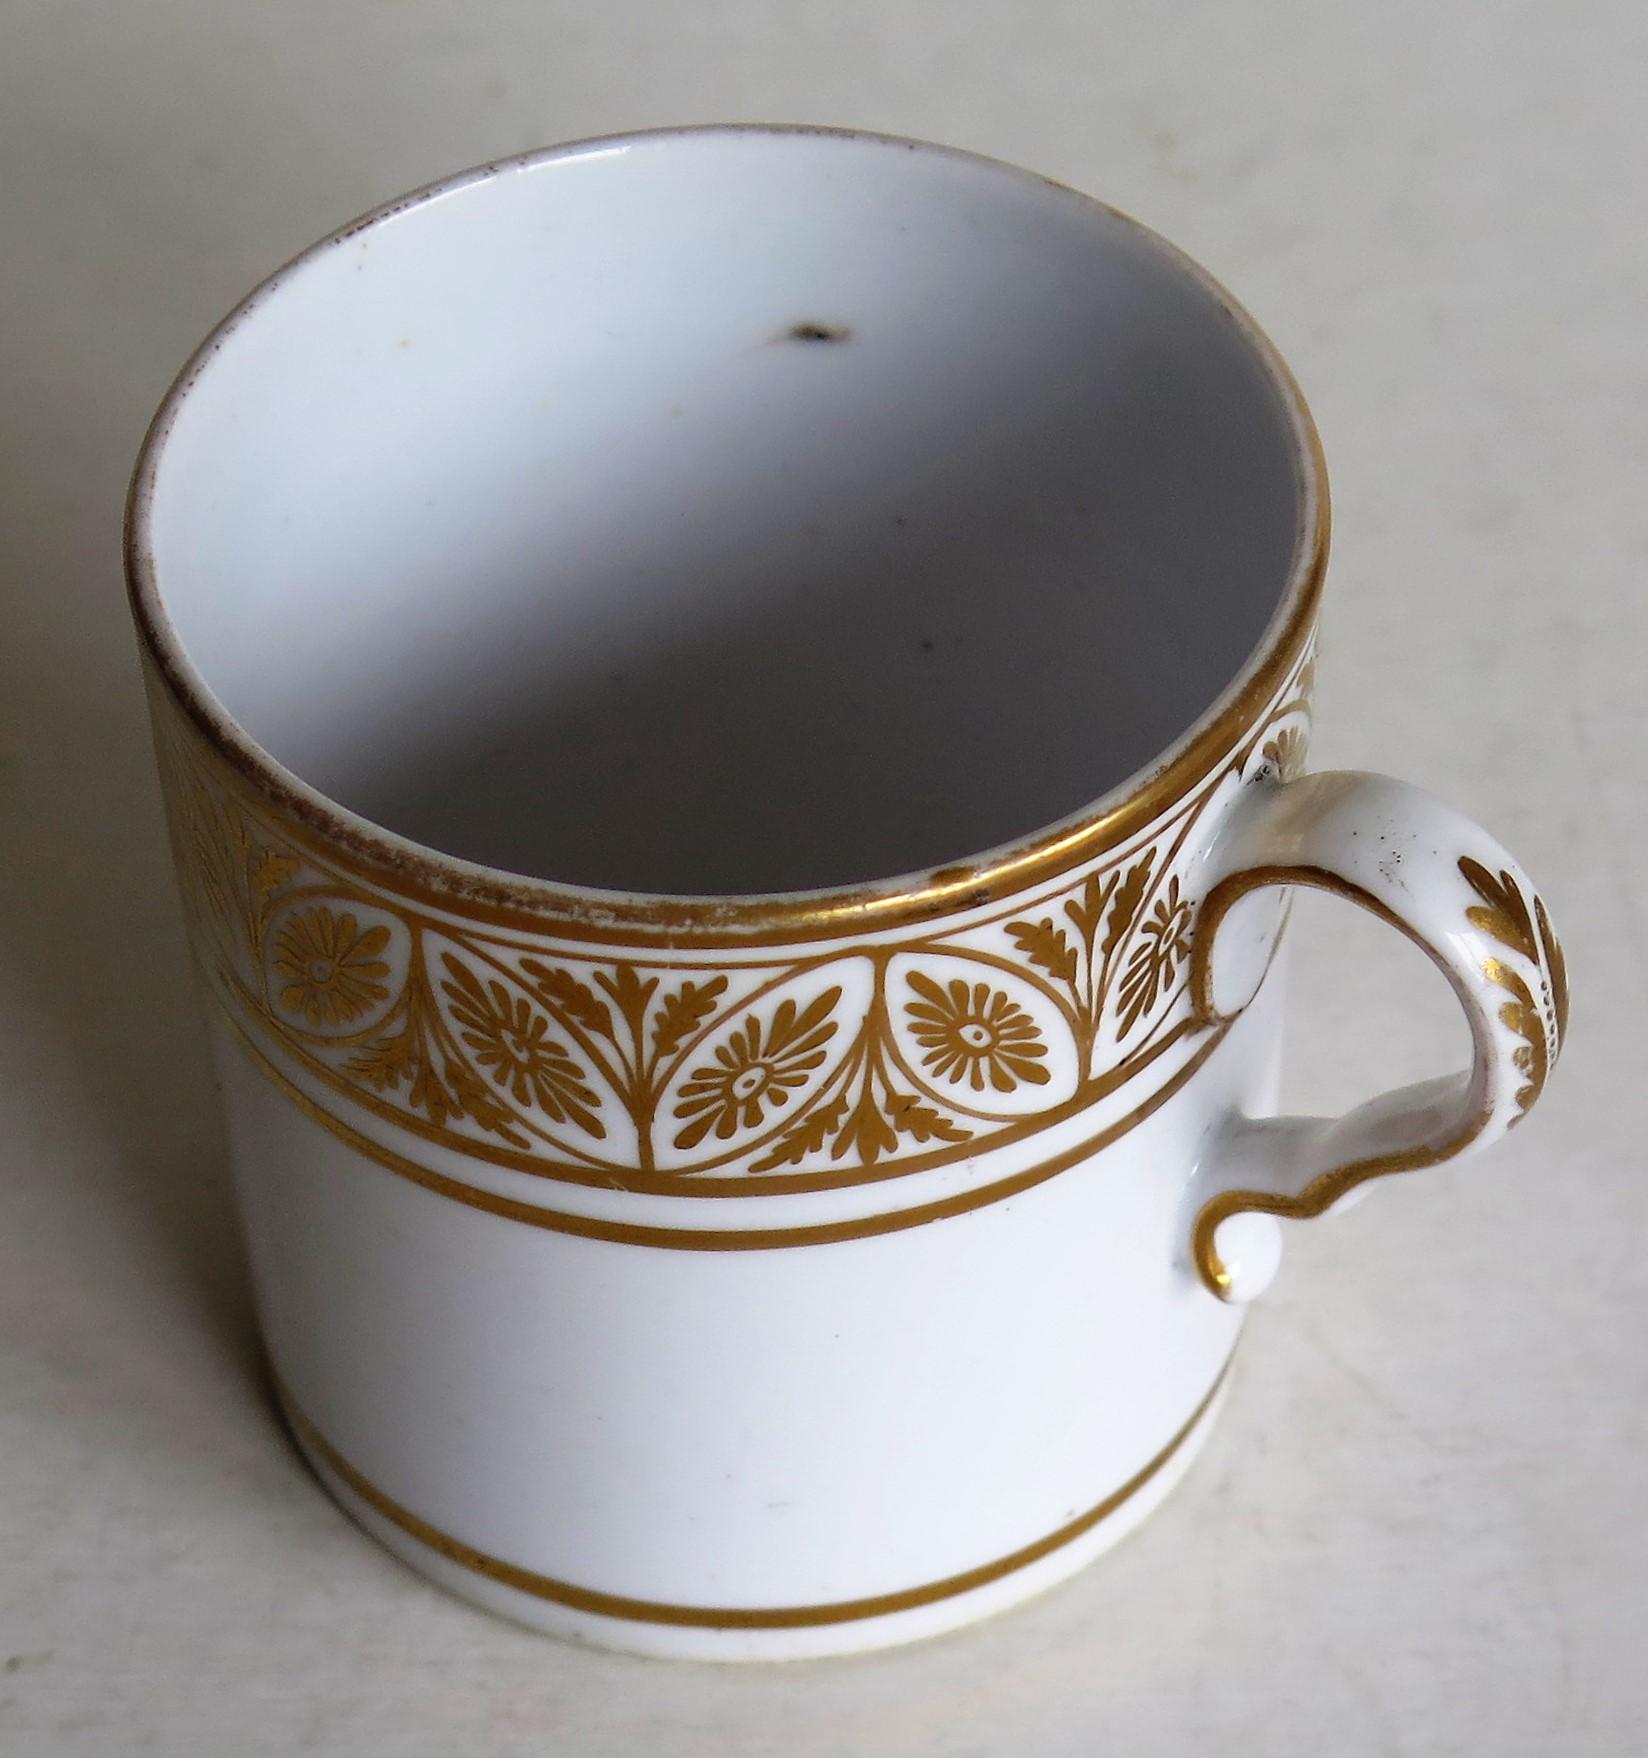 Il s'agit d'un bon exemple de boîte à café (tasse) en porcelaine anglaise d'époque George III, fabriquée par Spode au début du XIXe siècle, vers 1810.

Le Can a un côté droit et une anse en boucle Spode avec un coup de pied prononcé ou un coude à